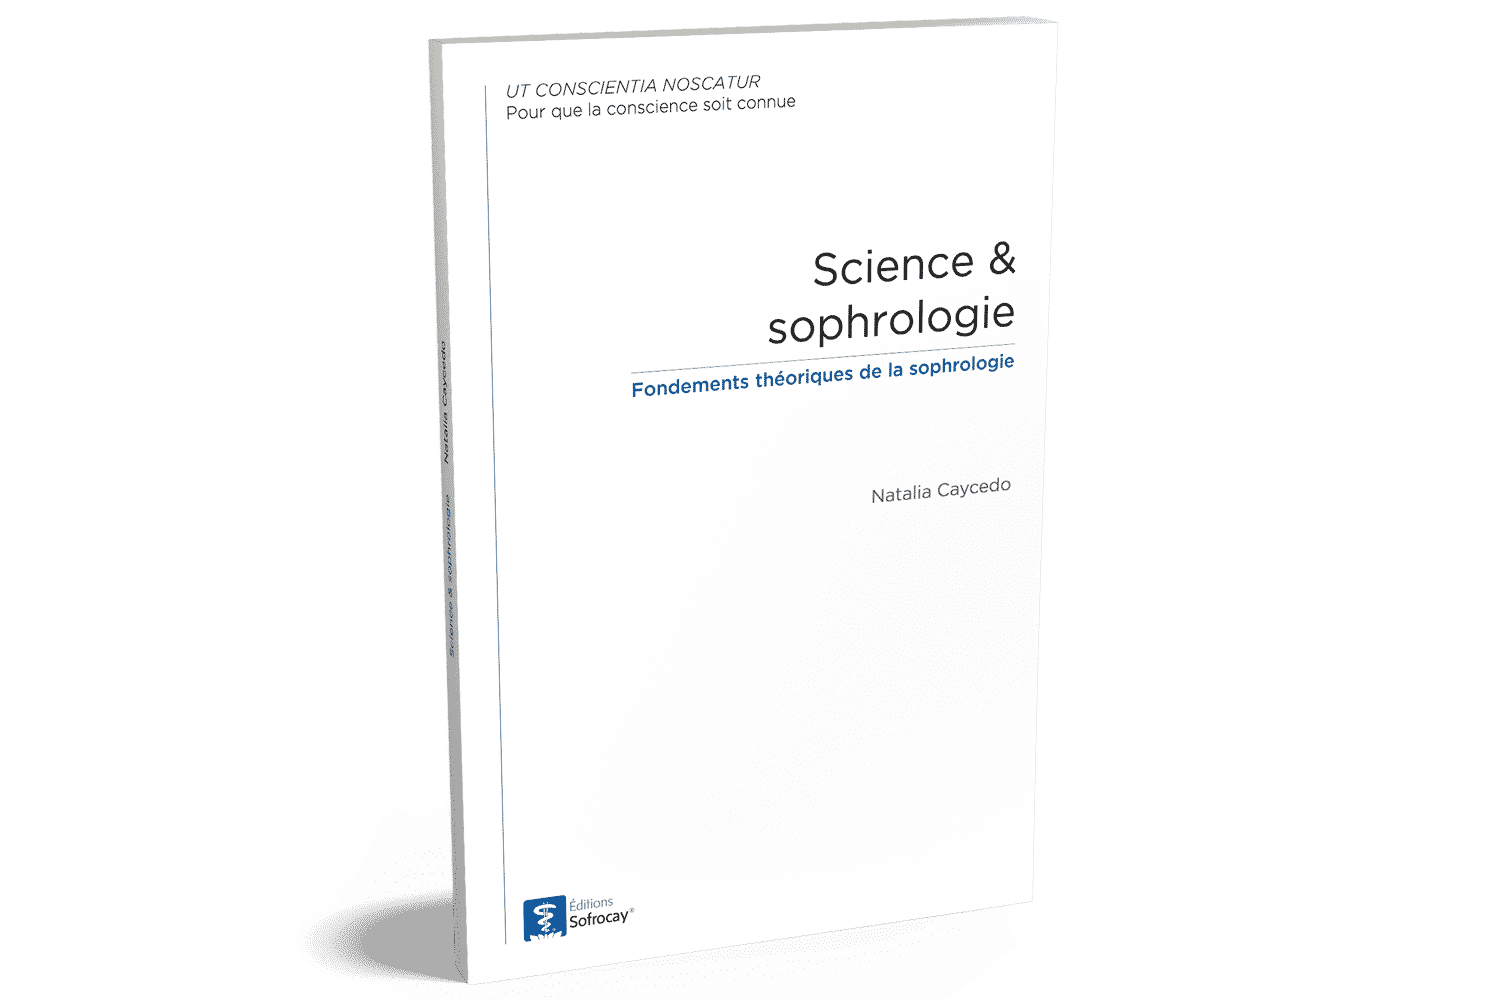 science & sophrologie